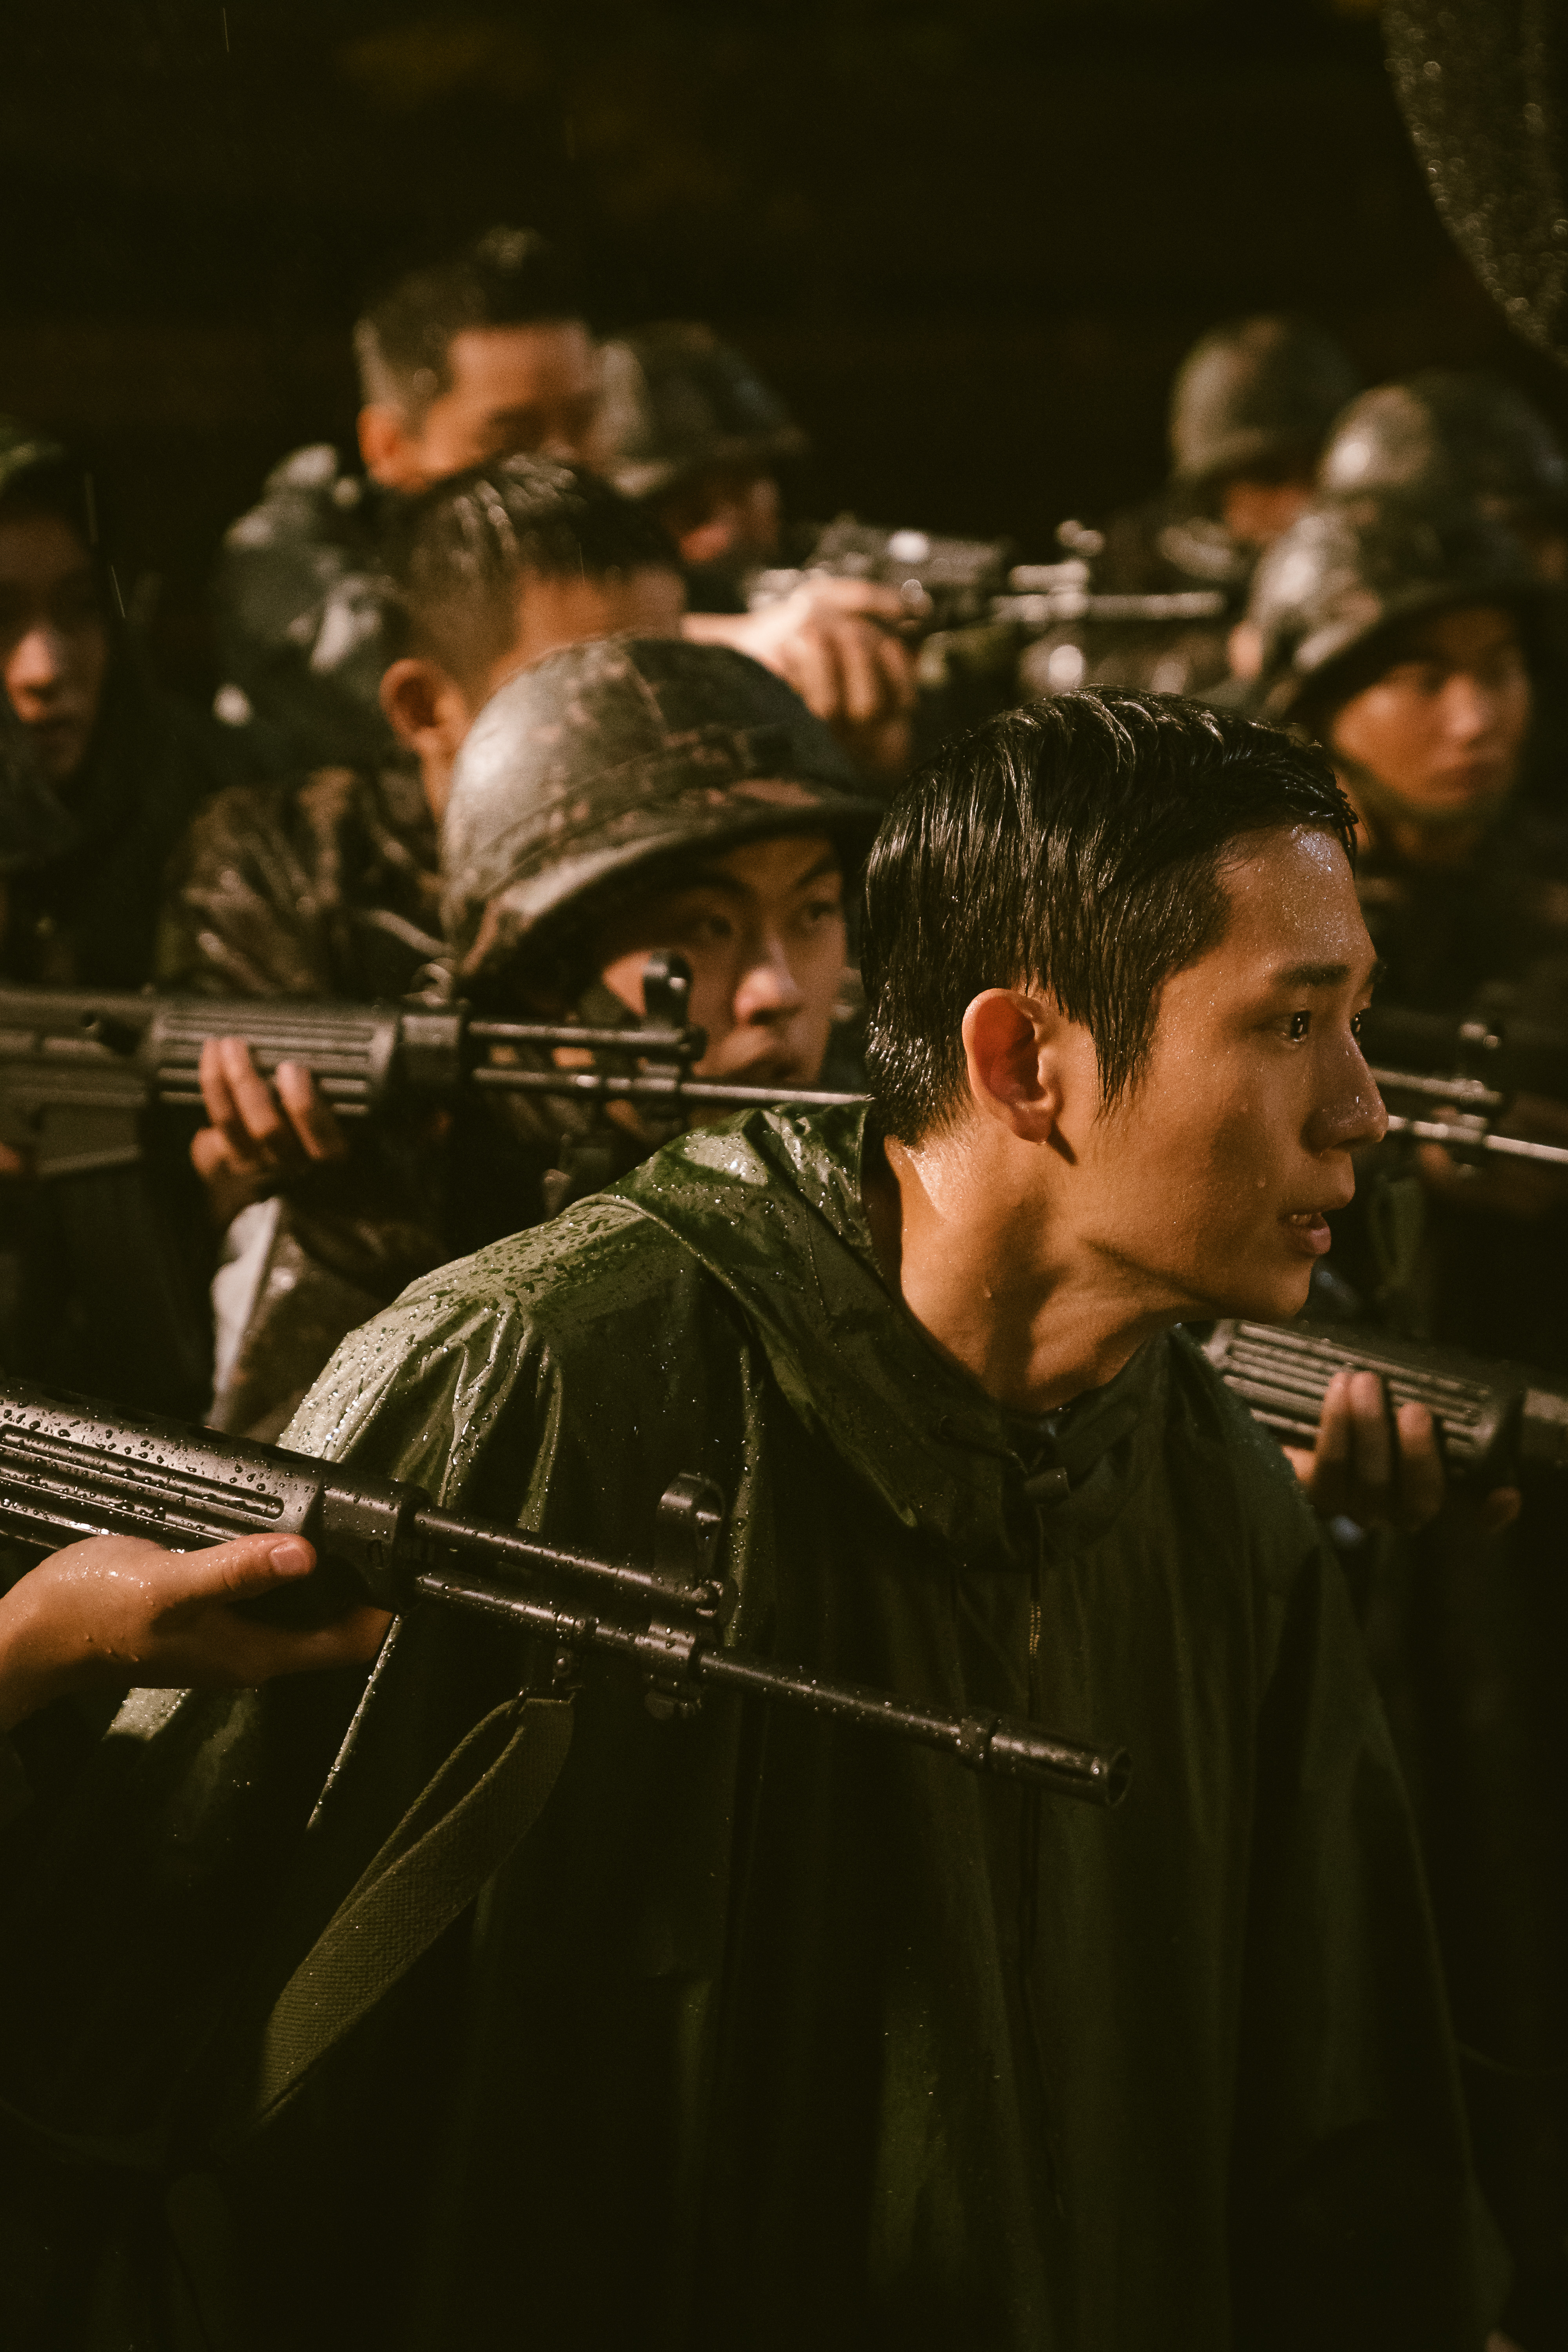 Jung Hae-in in <i></p>
<p>.PAG.</i> </p>
<p>Jung Hae-in en <i>D..</i></p>
<p> <i>D..</i>, Lanzado en 2021, llevado al abuso de la luz dentro del sistema obligatorio de reclutamiento militar de Corea del Sur y las razones por las cuales algunos están desesperados por salir de él. El título del programa se refiere a un equipo de soldados llamado “Desertter Pursuit”, a quienes tienen la tarea de rastrear y capturar desertores militares. A pesar de tener solo seis episodios, la primera temporada resonó profundamente con los reclutas anteriores e incluso llevó al Ministerio de Defensa de Corea del Sur a emitir una declaración de que los incidentes de violencia y abuso en el ejército estaban en declive. .</p>
<h2><span id=